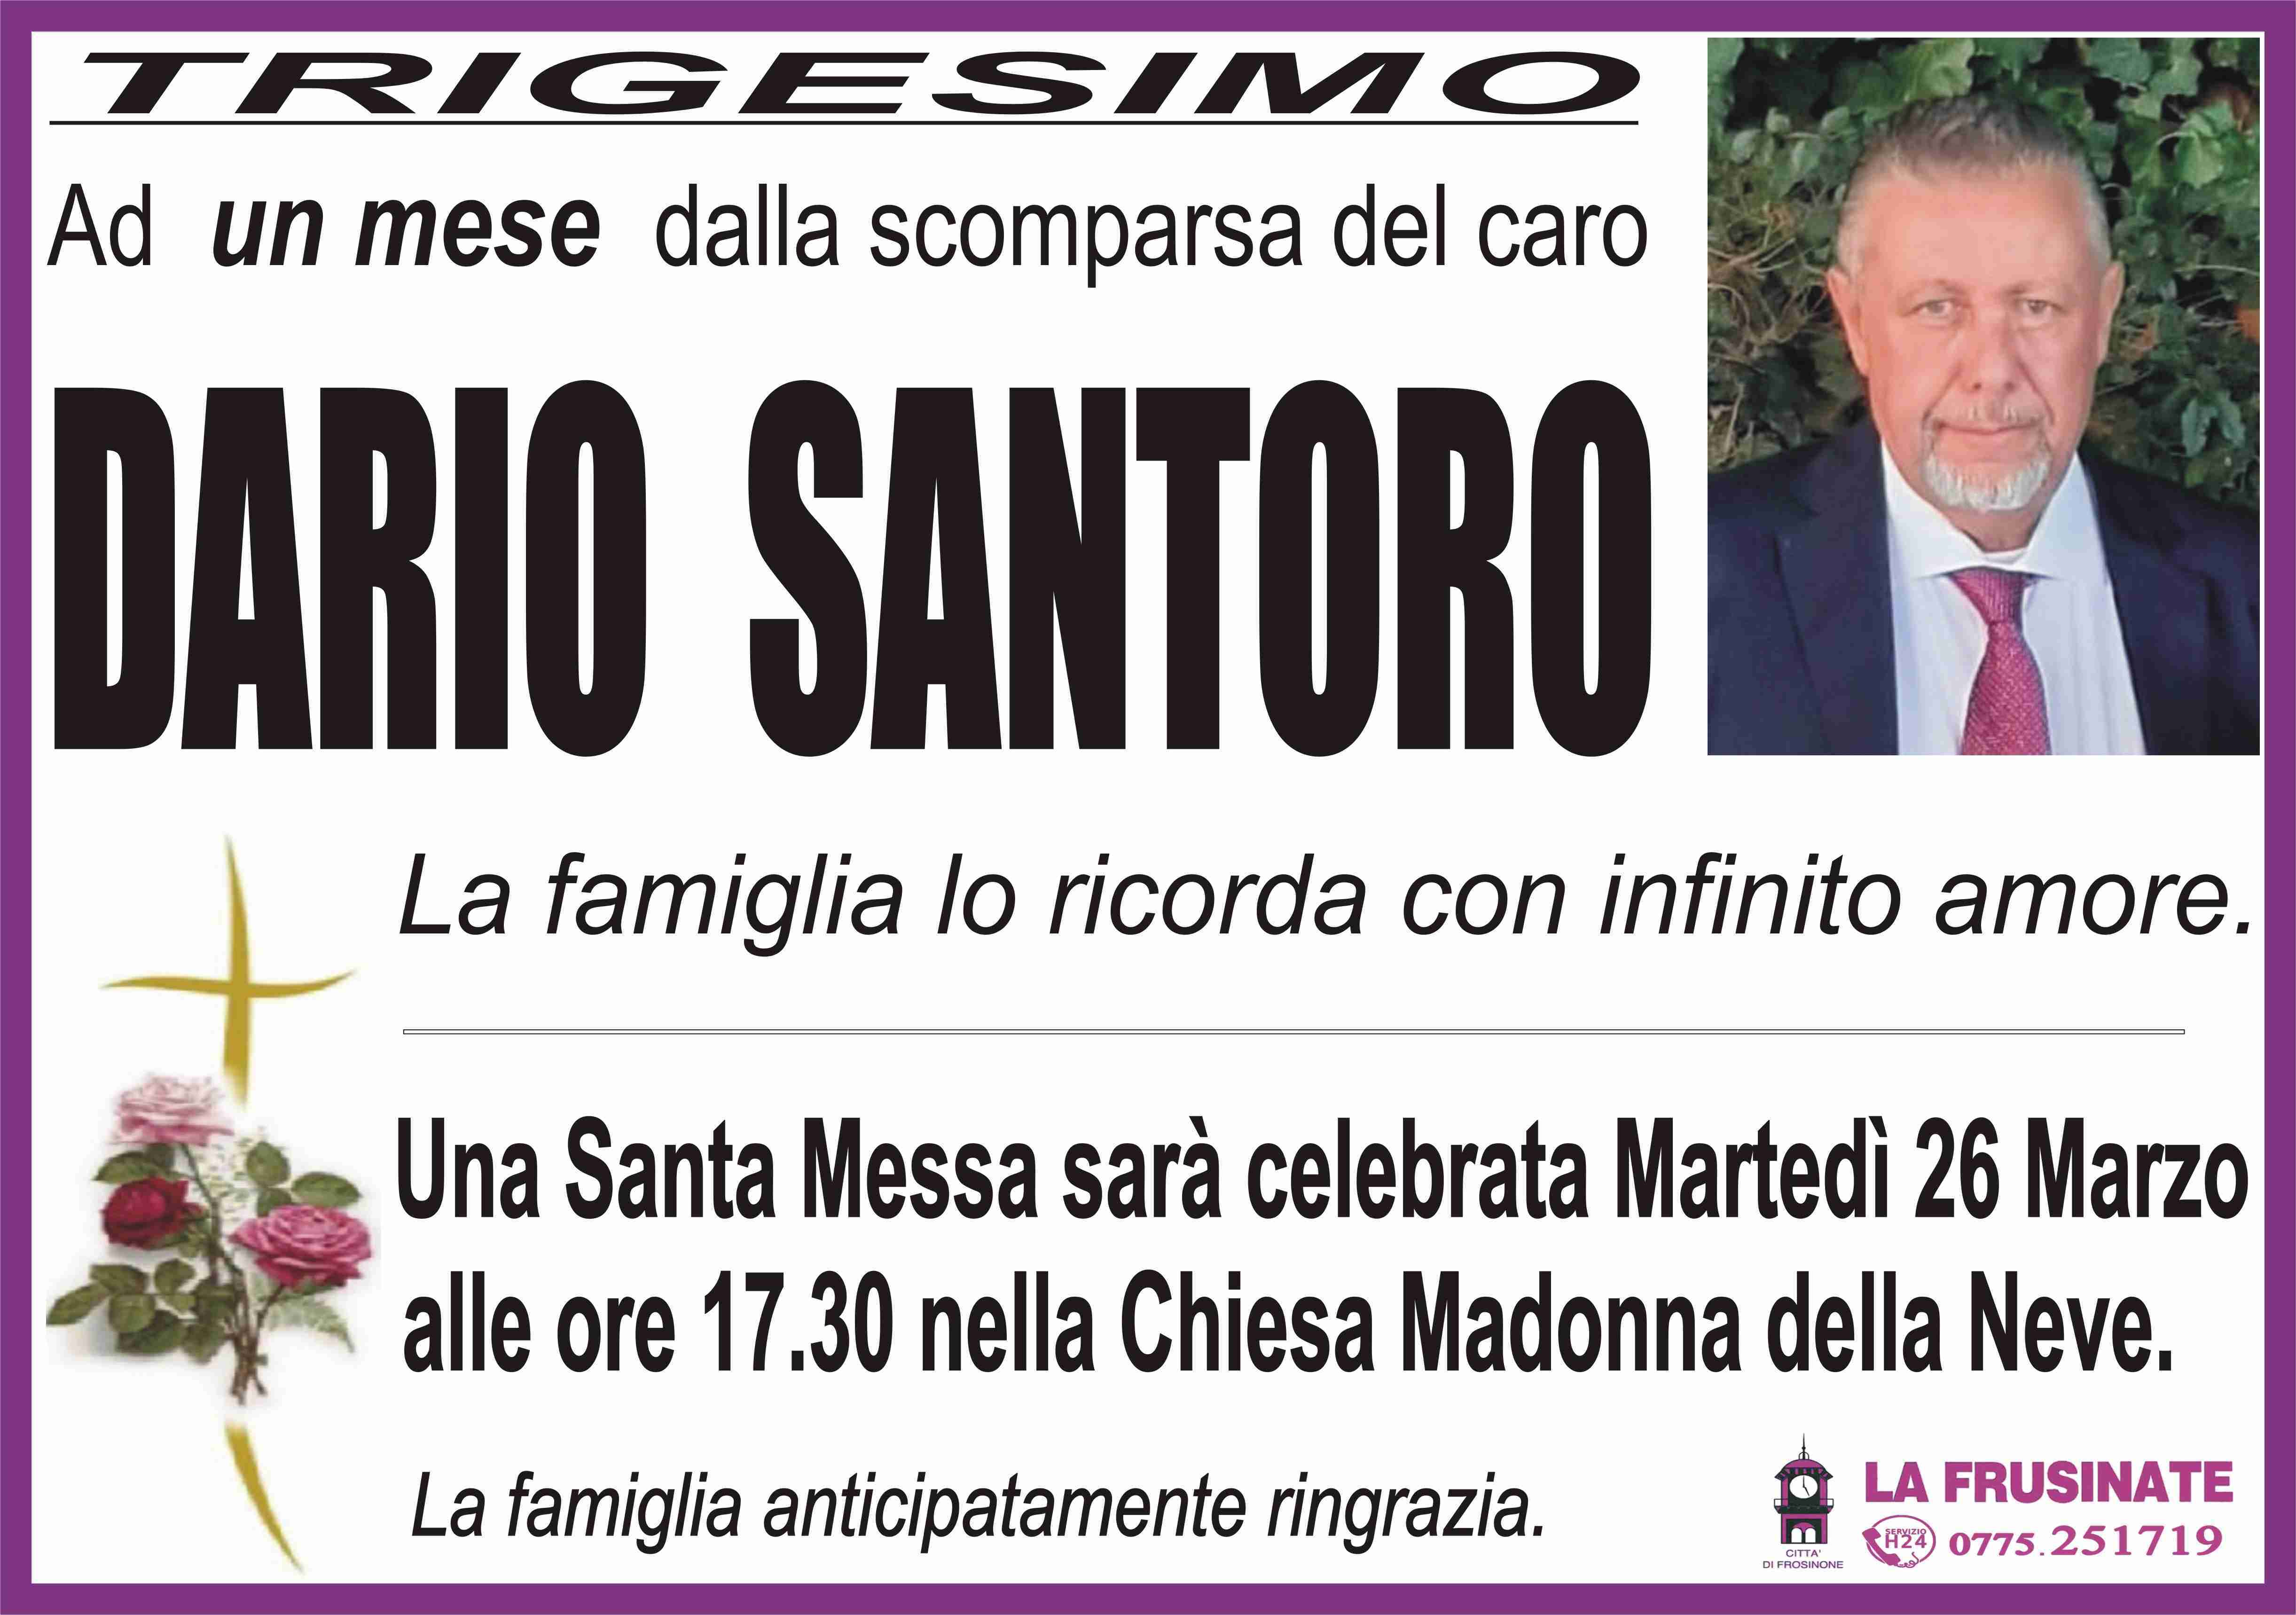 Dario Santoro